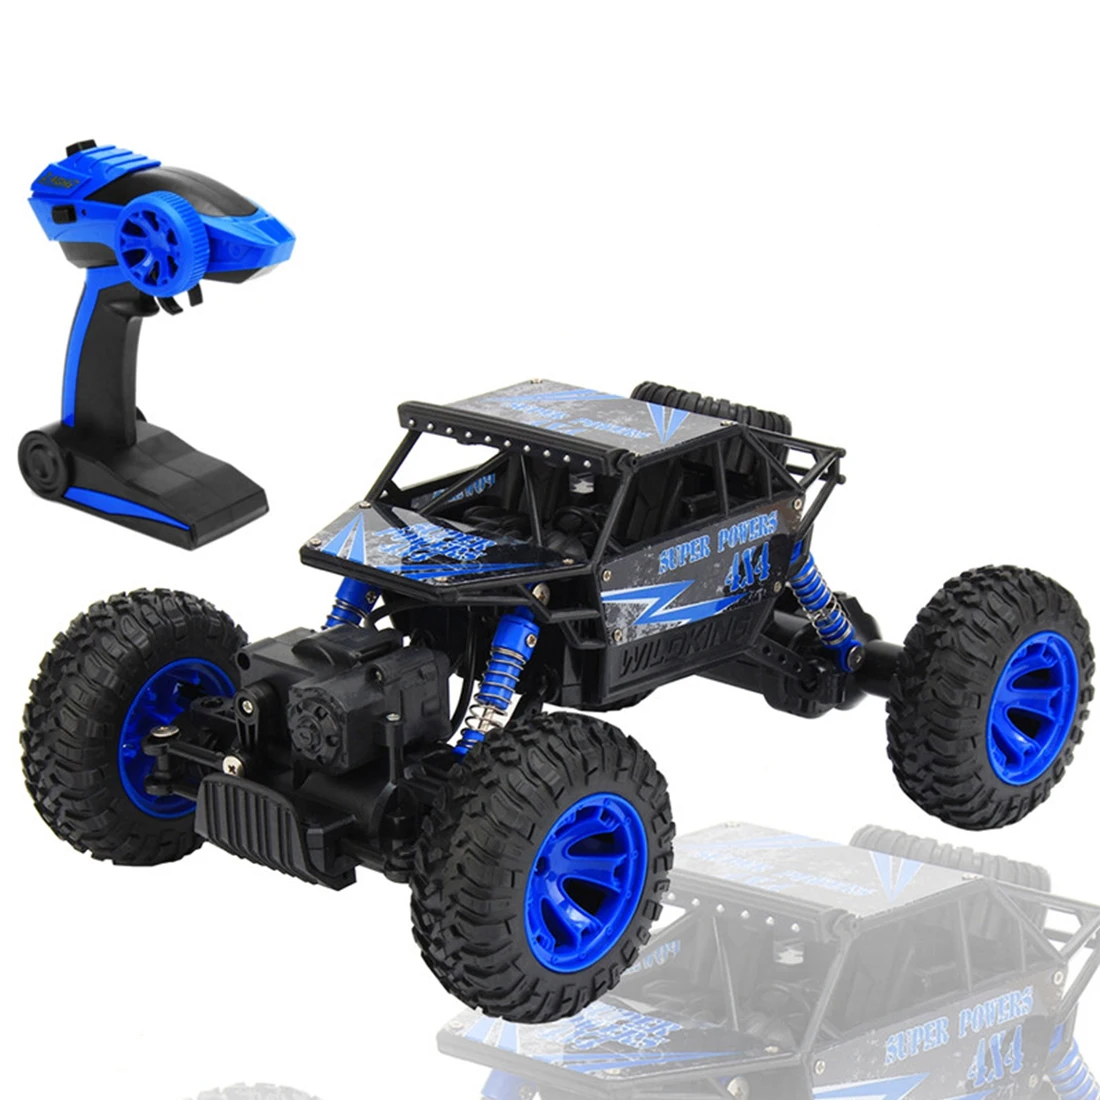 Лучшая 2,4 ГГц 1:18 масштаб 4x4 рок сканеры автомобиль RC Рок Гусеничный 4WD Внедорожный гоночный грузовик автомобиль игрушка, ЕС вилка - Цвет: Blue